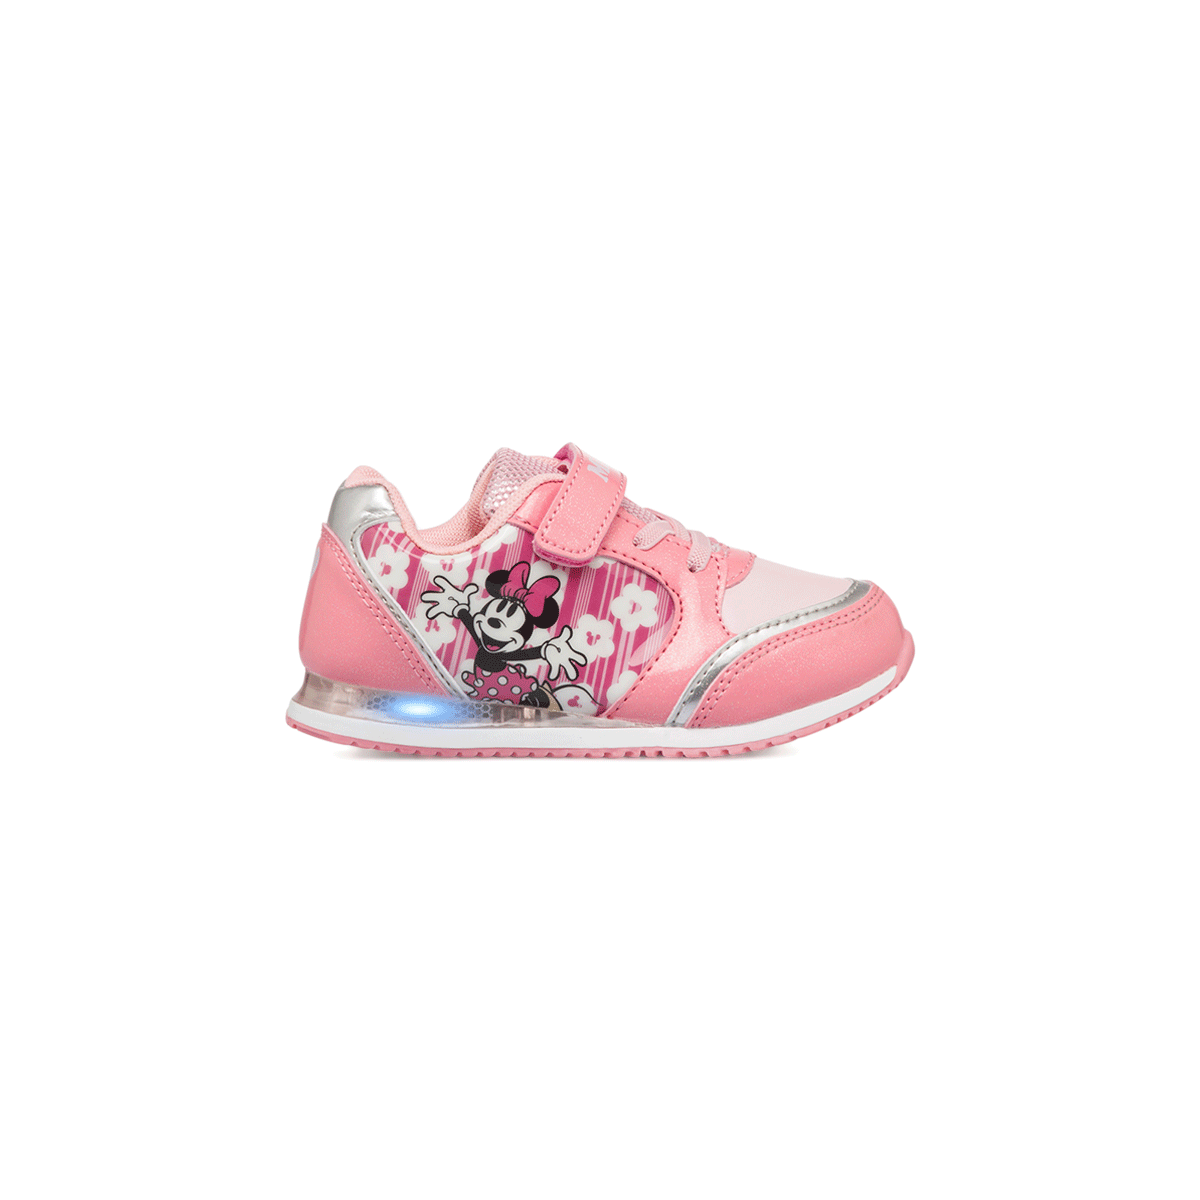 Sneakers primi passi rosa da bambina con luci e stampa Minnie, Scarpe Primi passi, SKU s332000087, Immagine 0